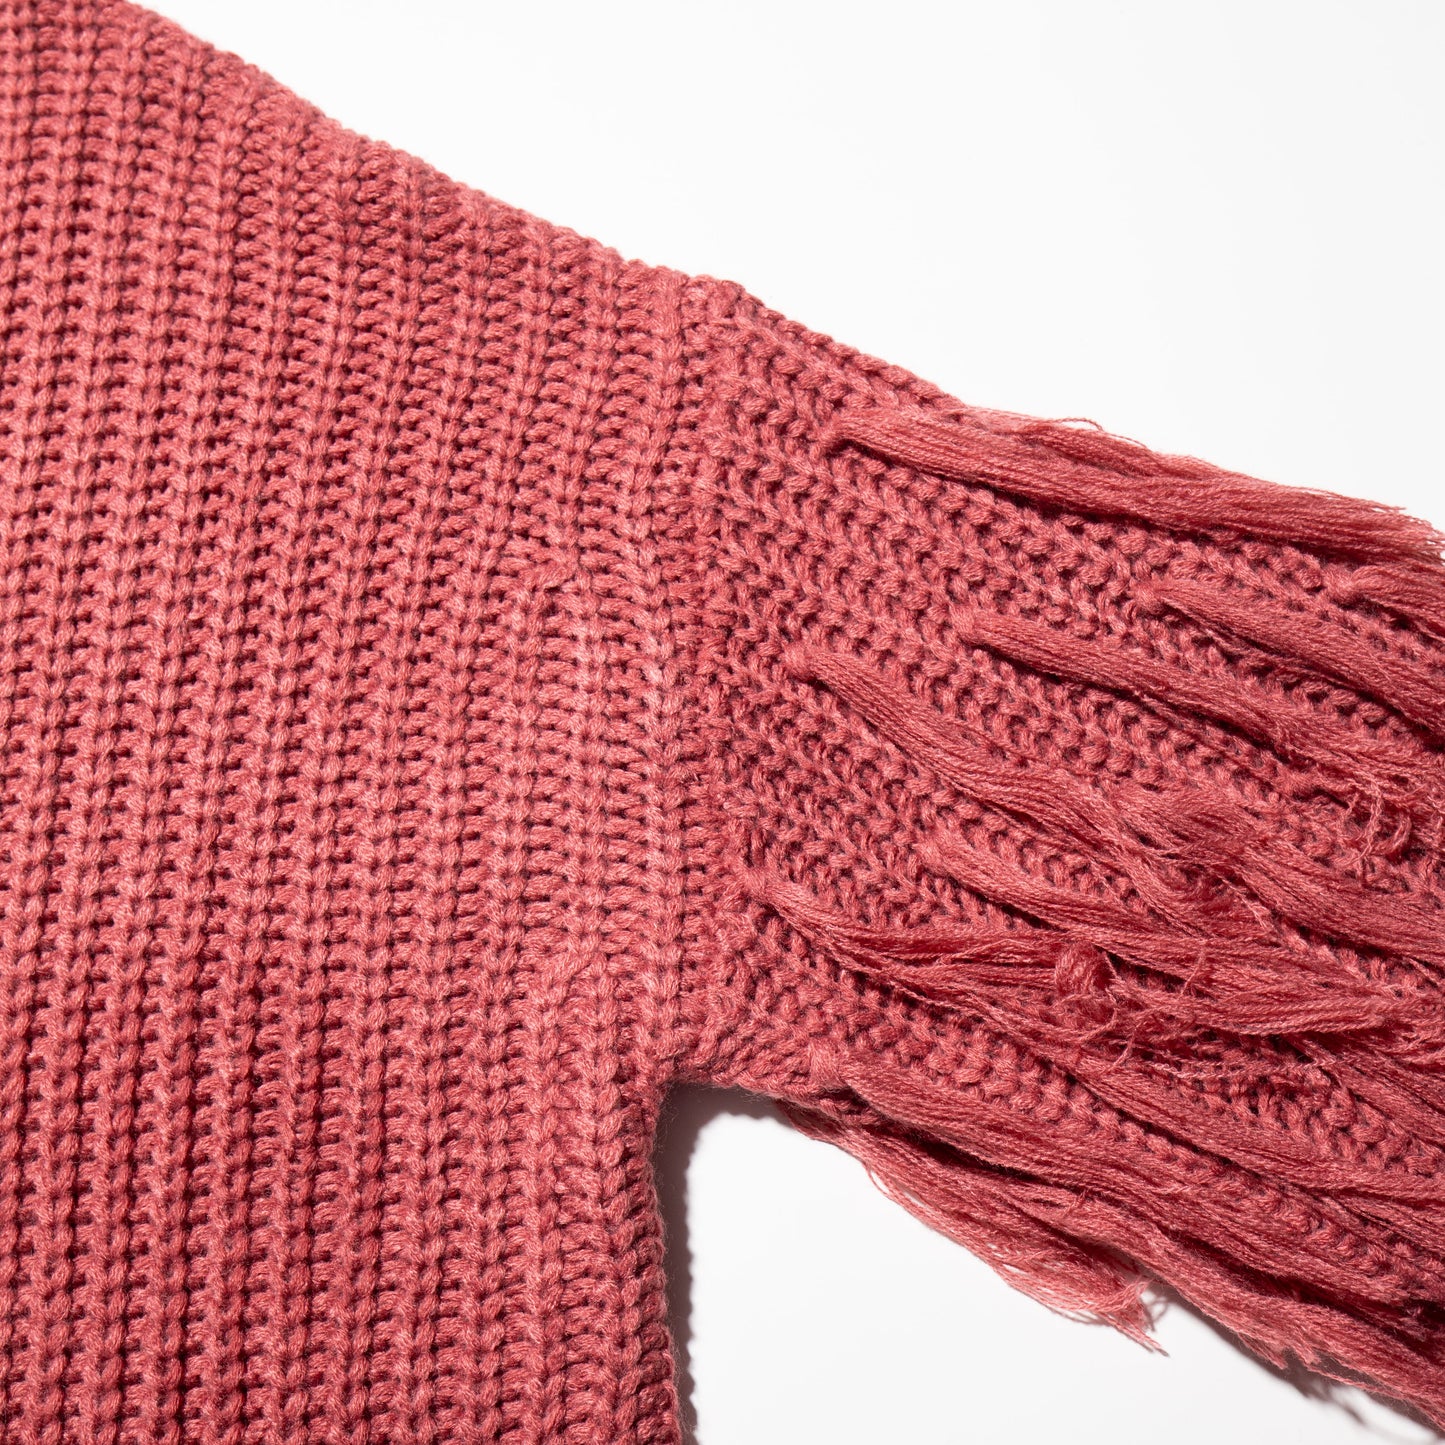 vintage fringe sleeve loose sweater